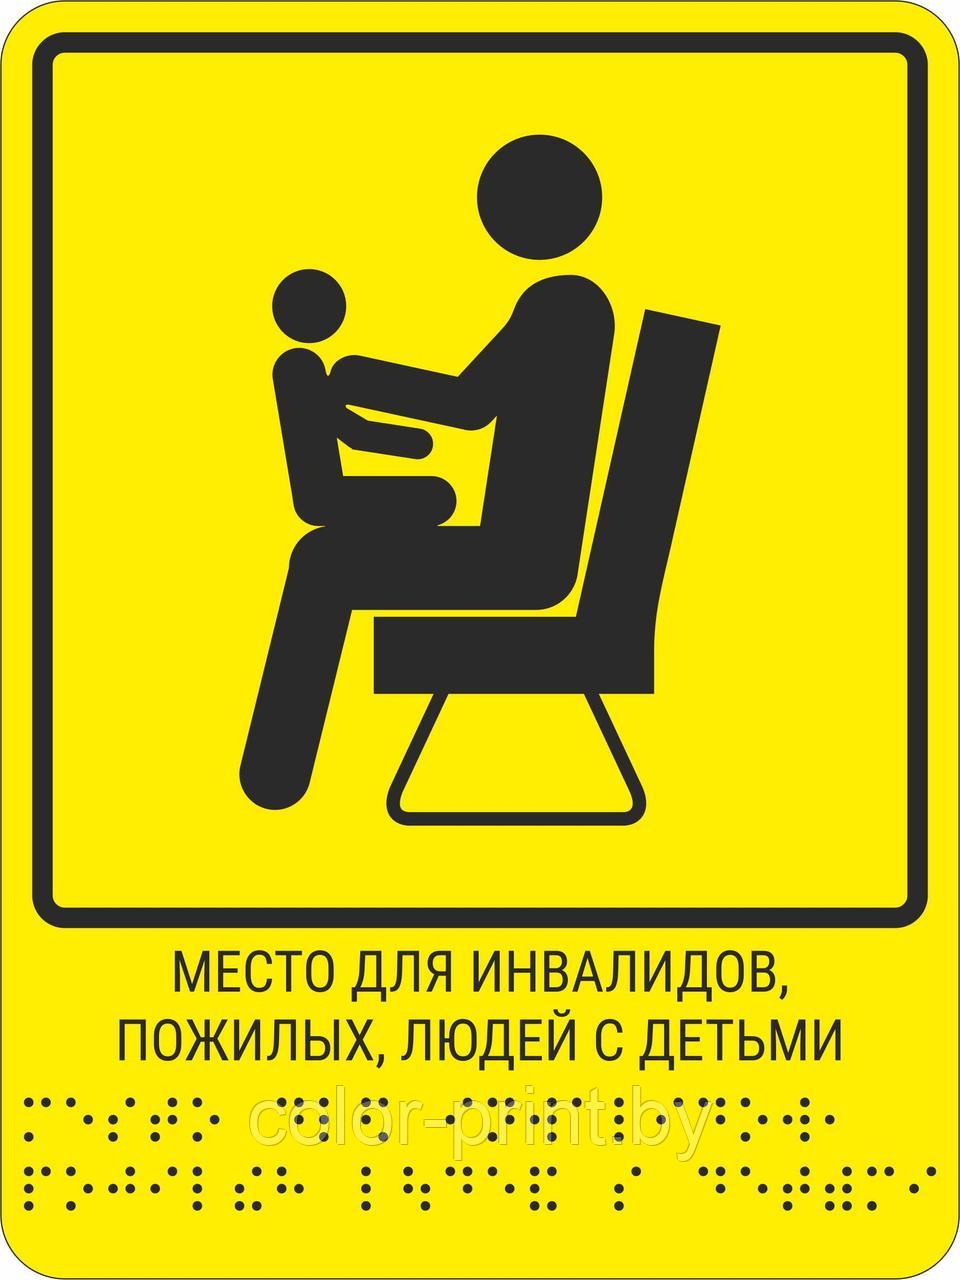 Тактильная пиктограмма с шрифтом Брайля  "Место для инвалидов, пожилых, людей с детьми"